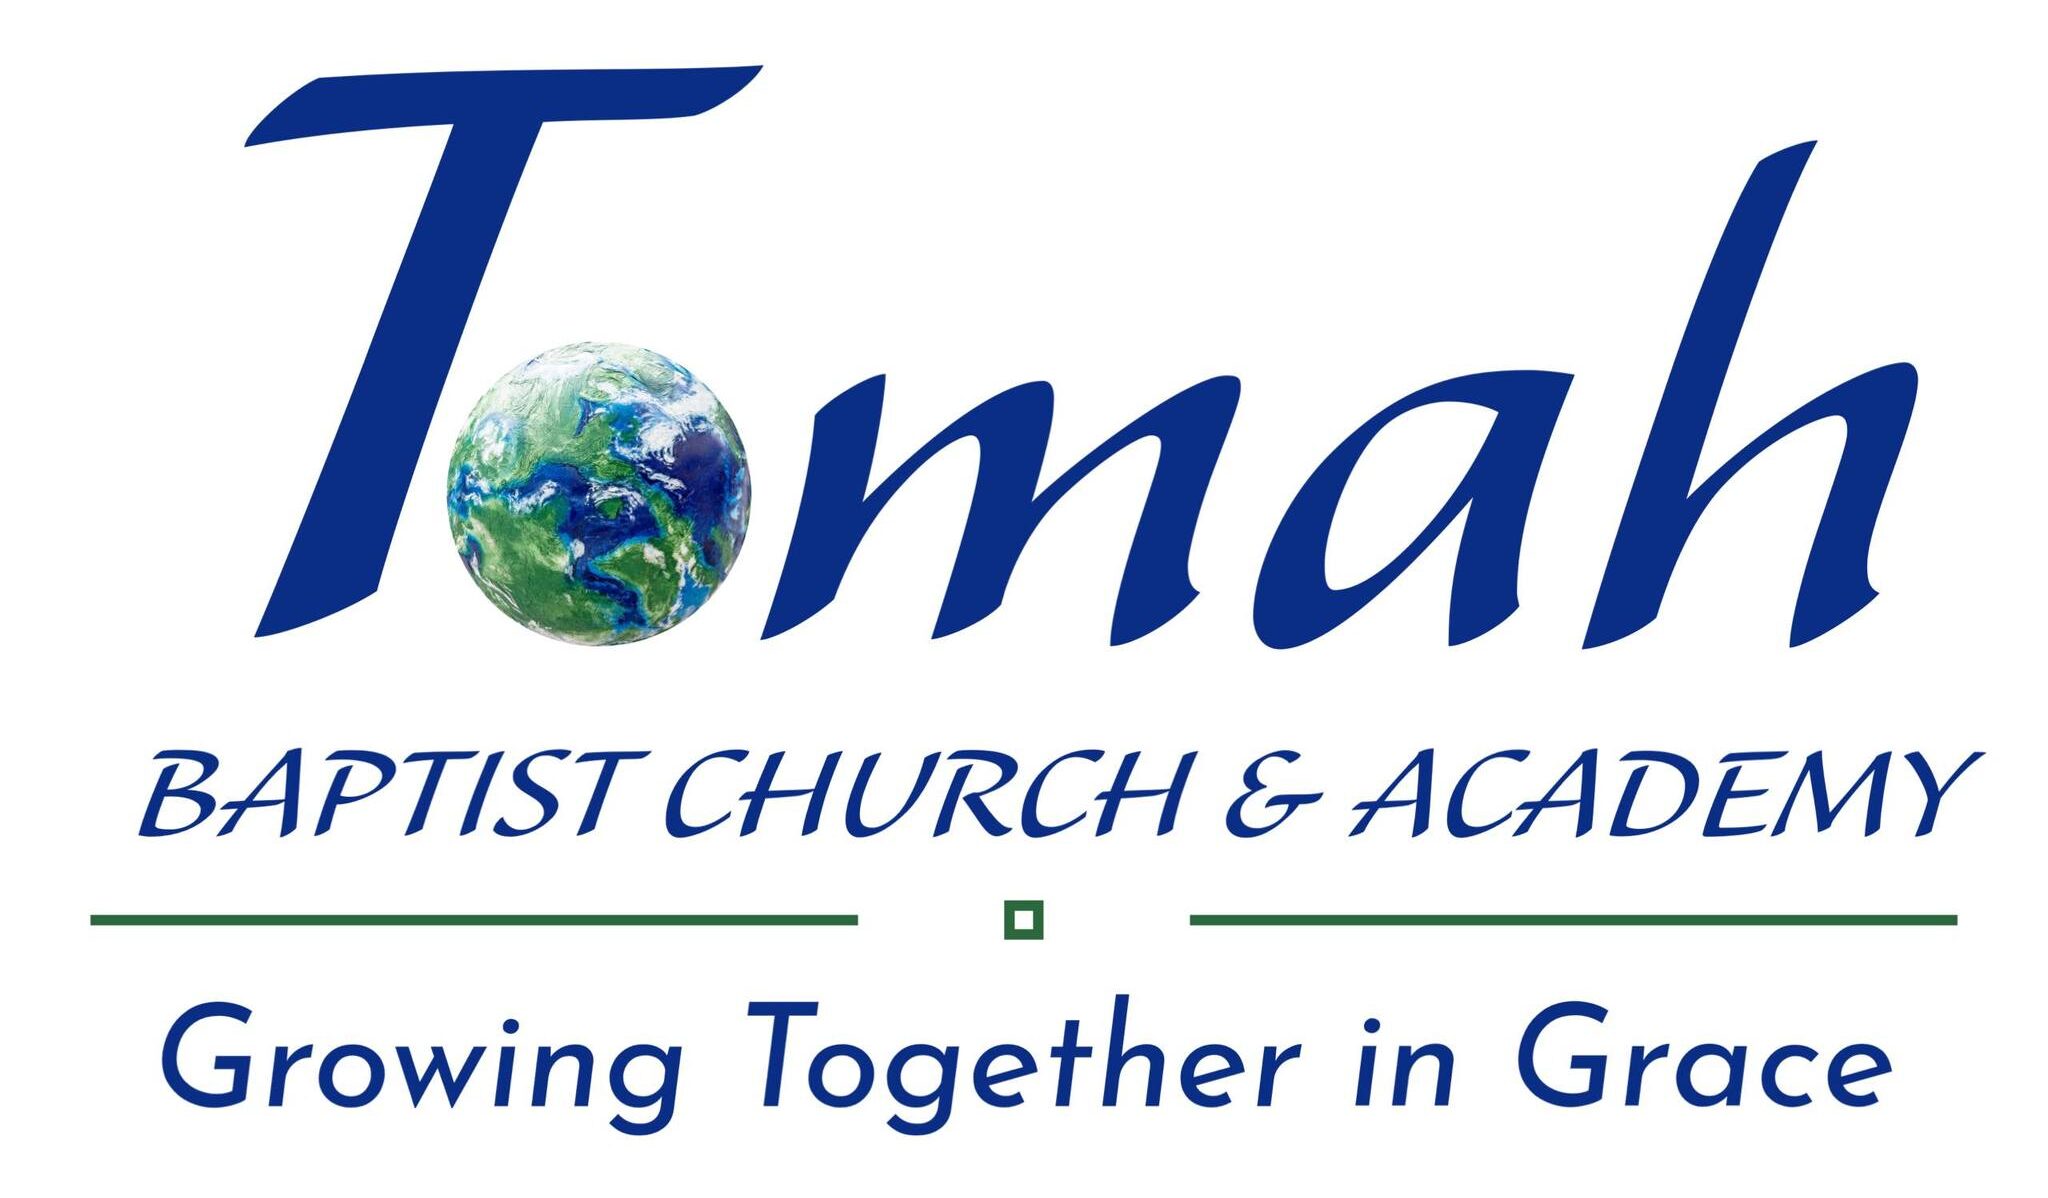 Tomah Baptist Church & Academy